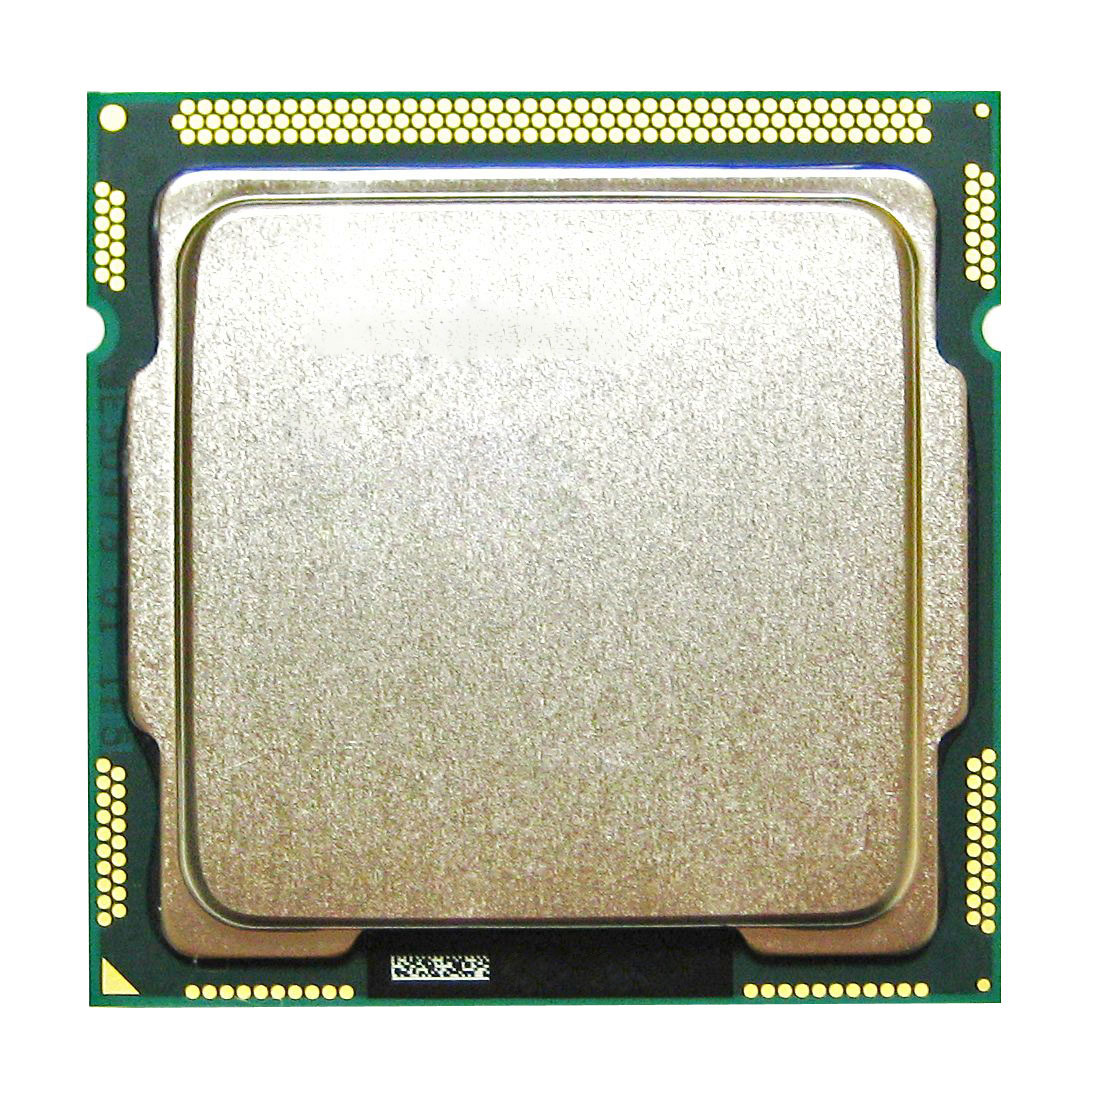 QV583AV HP 3.30GHz 5.00GT/s DMI 6MB L3 Cache Intel Core i5-2500 Quad Core Desktop Processor Upgrade